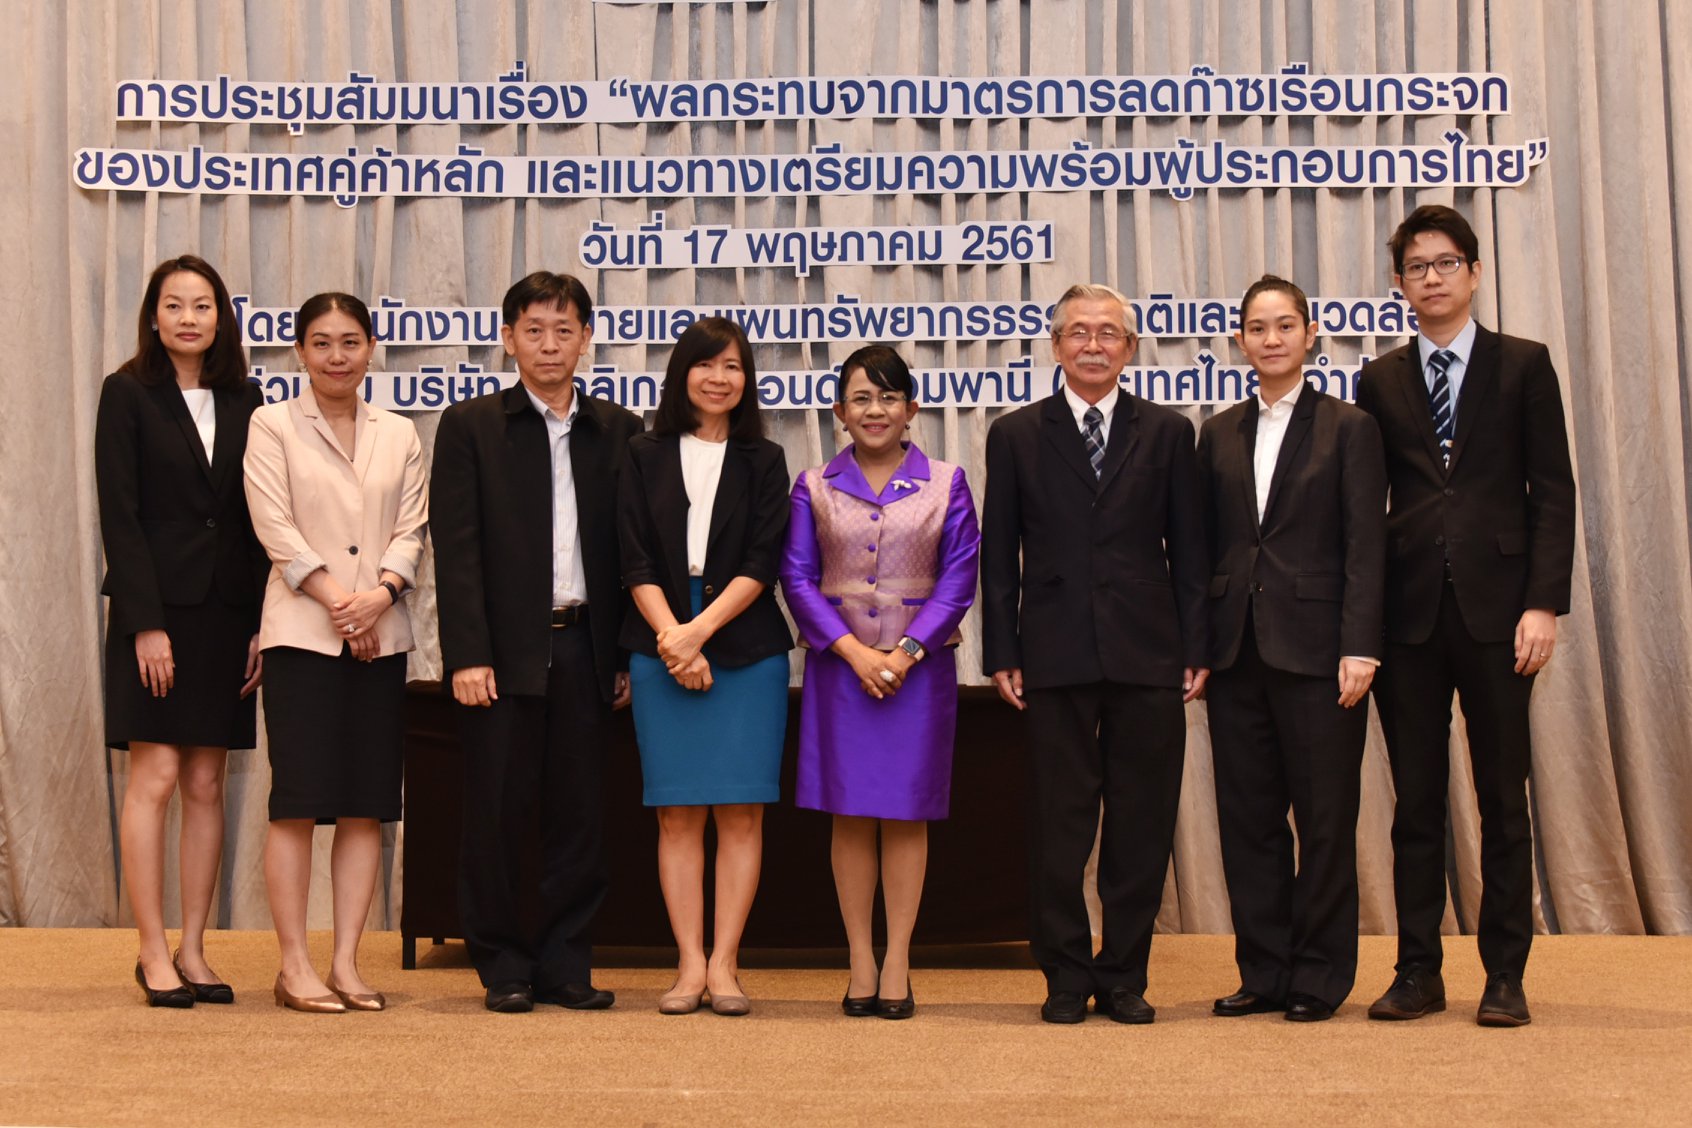 ประชุมสัมมนา เรื่อง “ผลกระทบจากมาตรการลดก๊าซเรือนกระจกของประเทศคู่ค้าหลัก และแนวทางเตรียมความพร้อมผู้ประกอบการไทย”